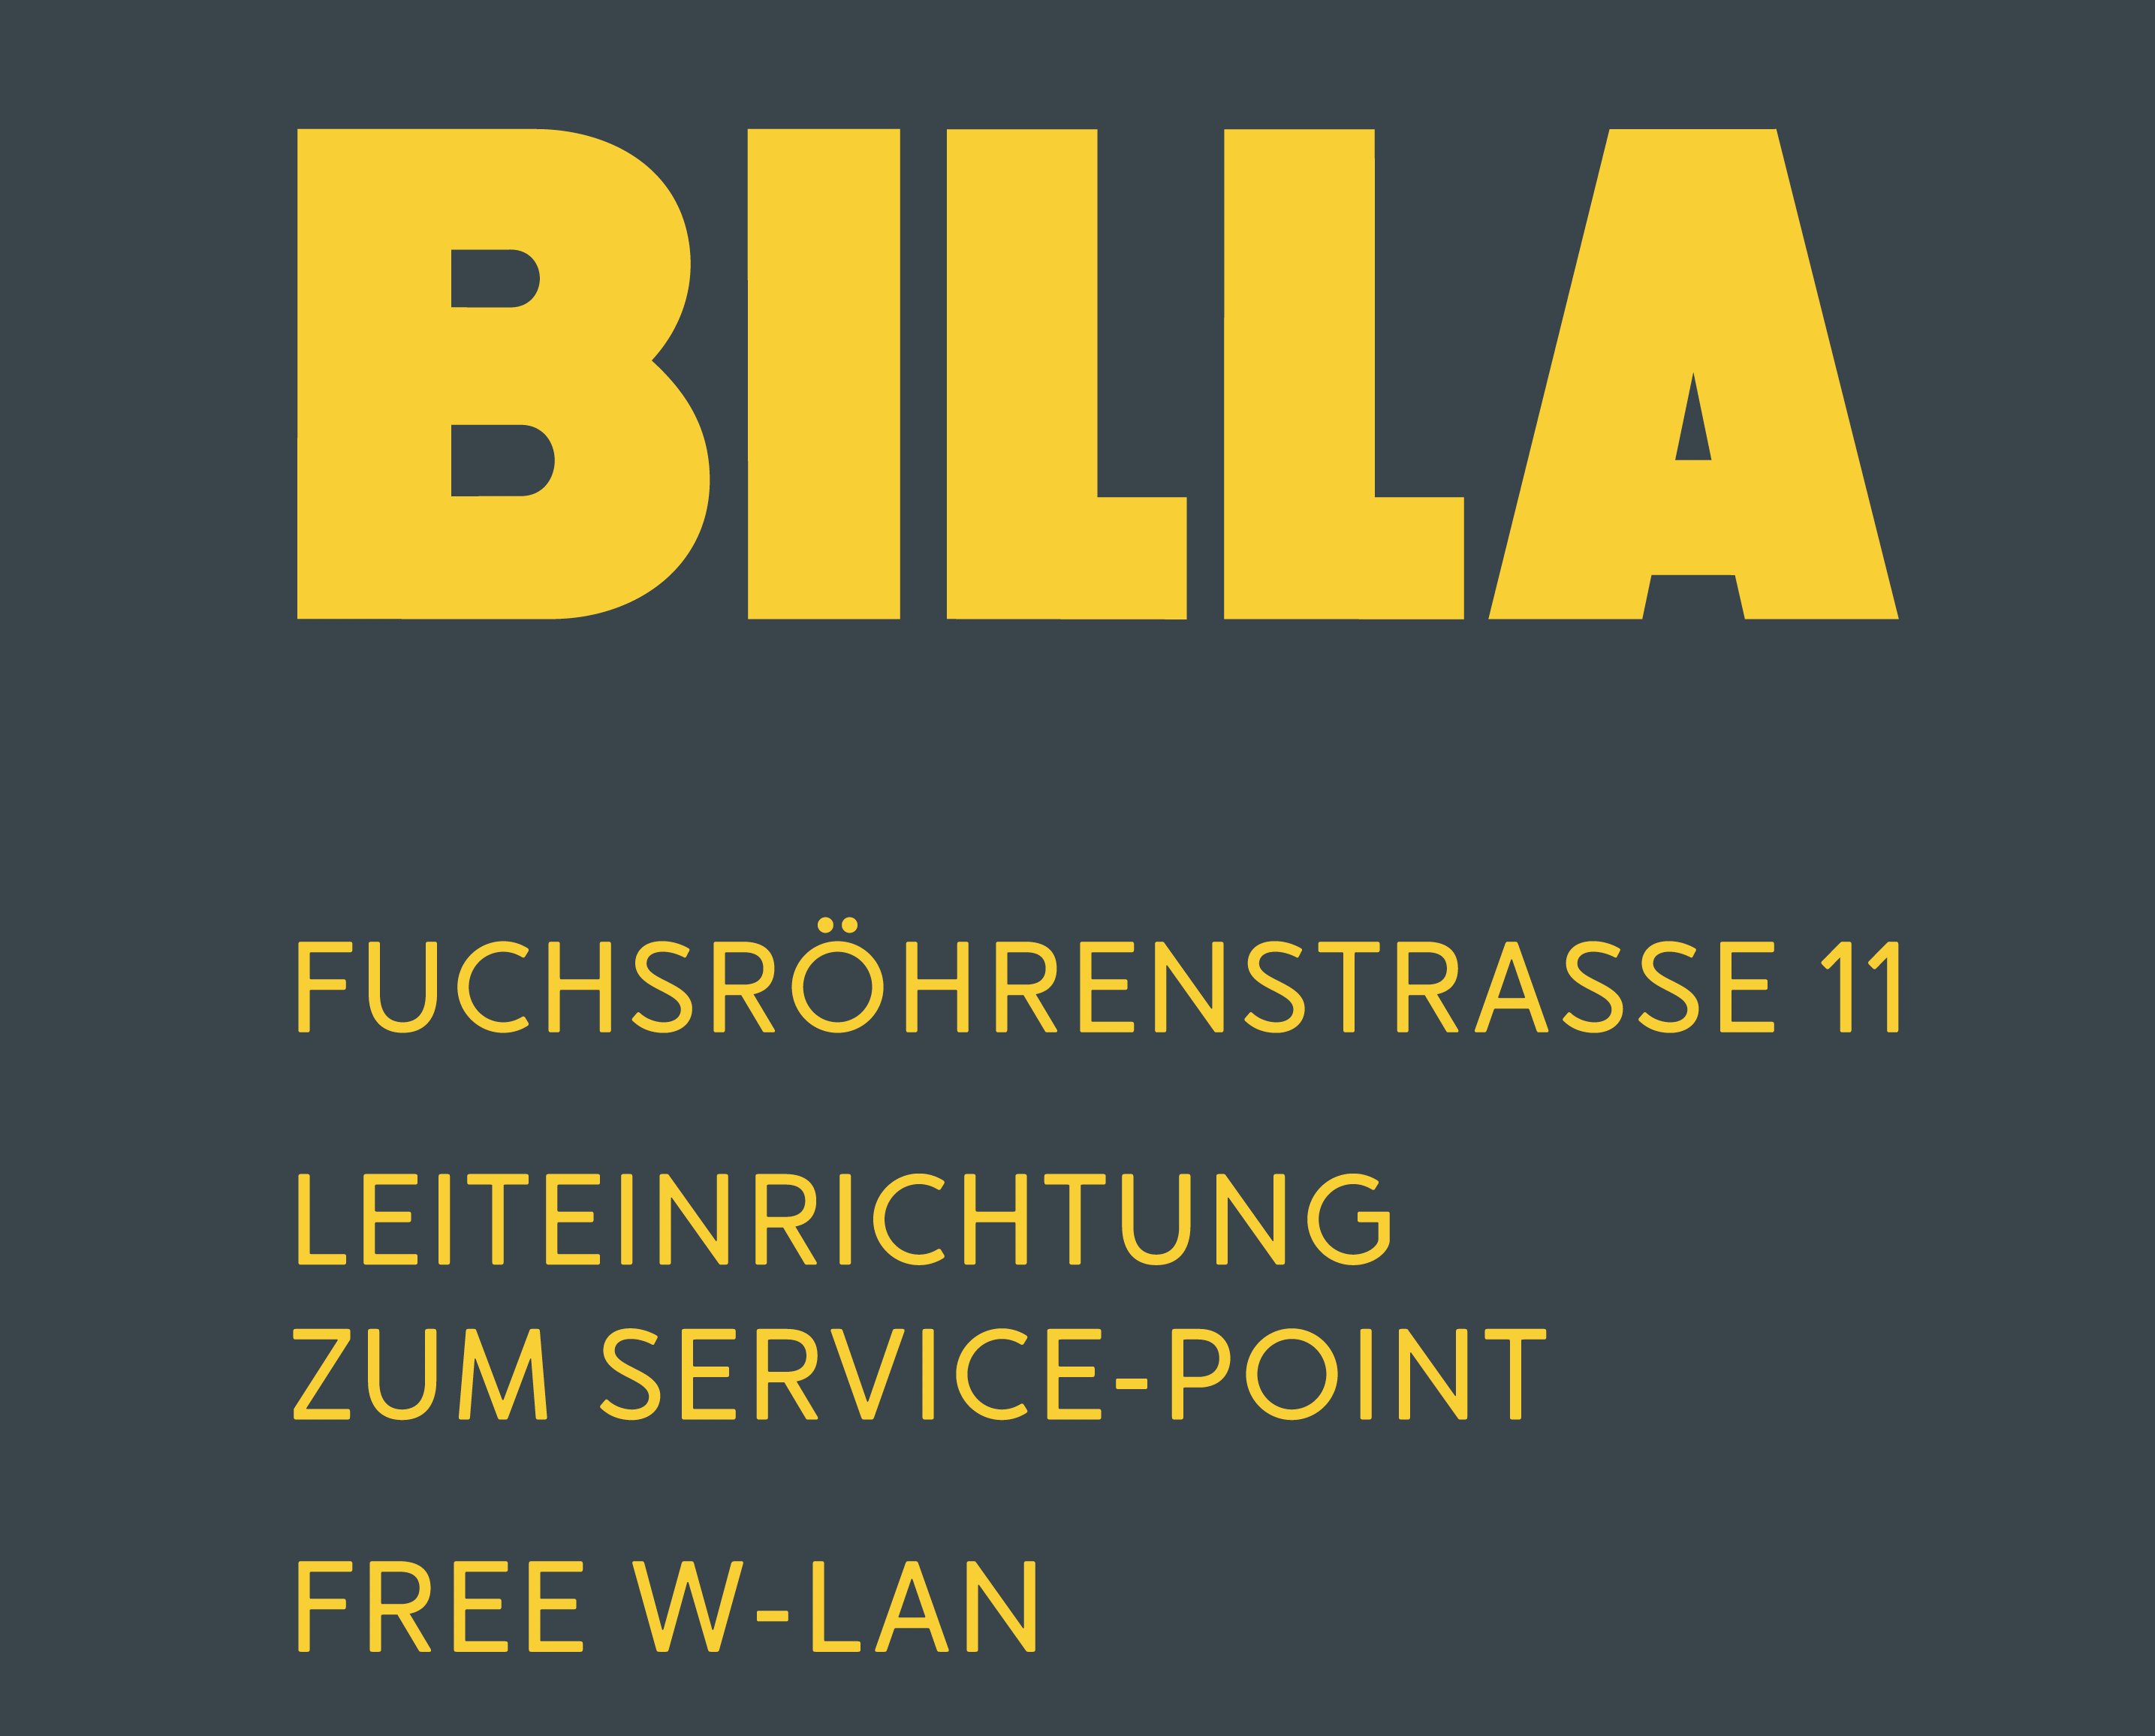 Billa Wien